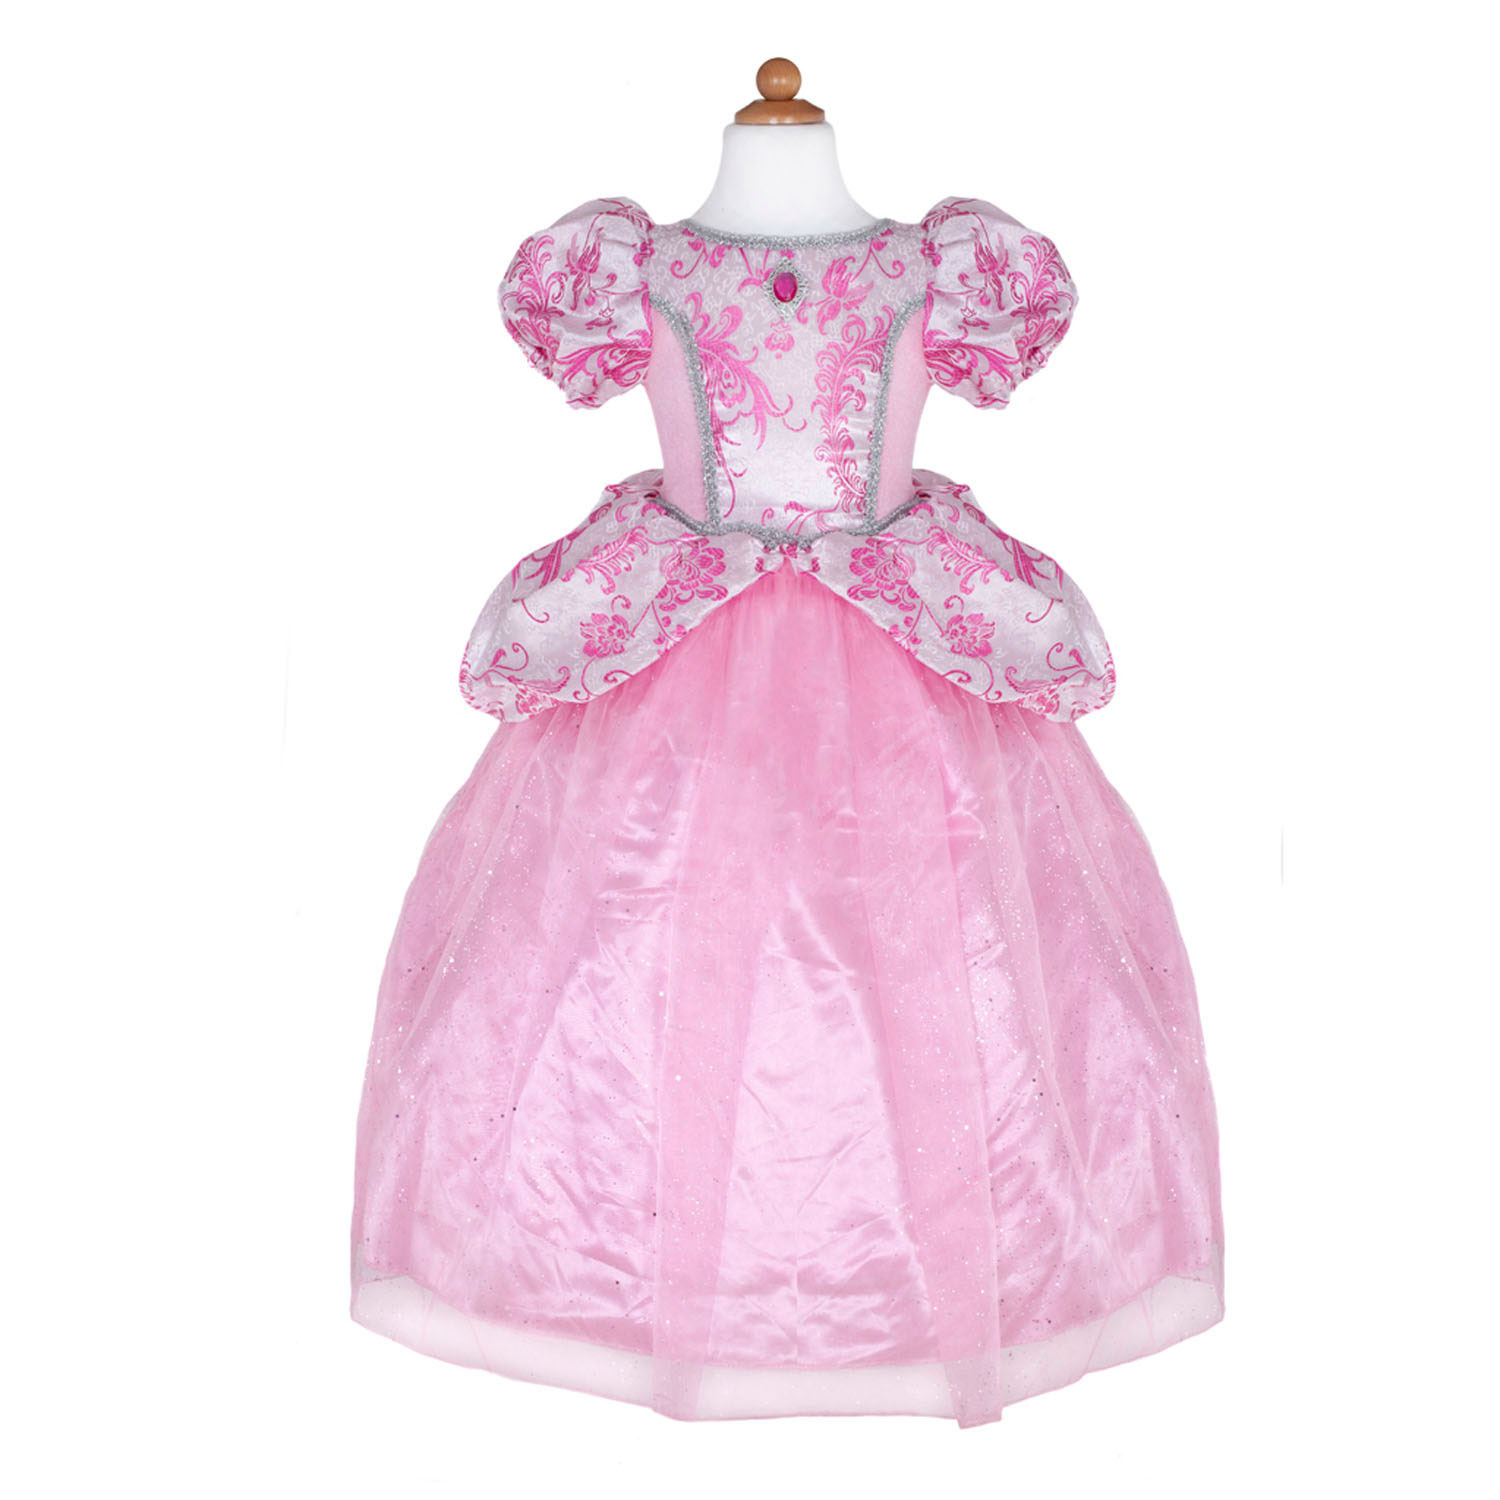 Prinzessin Luxus-Kostümkleid, 5-6 Jahre